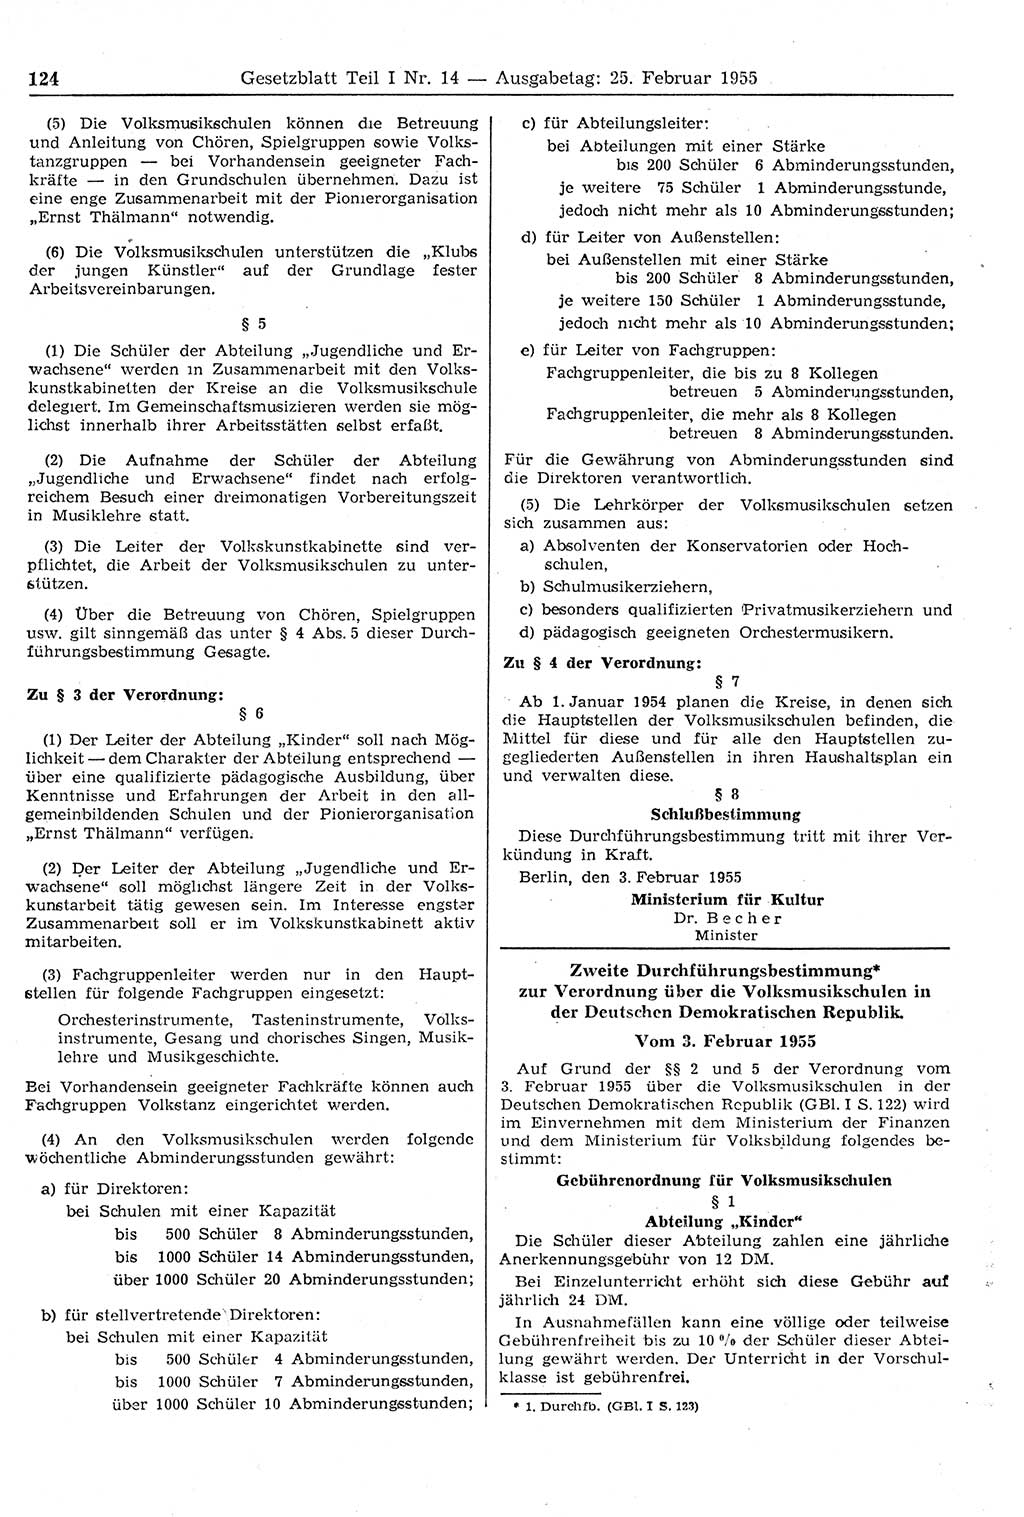 Gesetzblatt (GBl.) der Deutschen Demokratischen Republik (DDR) Teil Ⅰ 1955, Seite 124 (GBl. DDR Ⅰ 1955, S. 124)